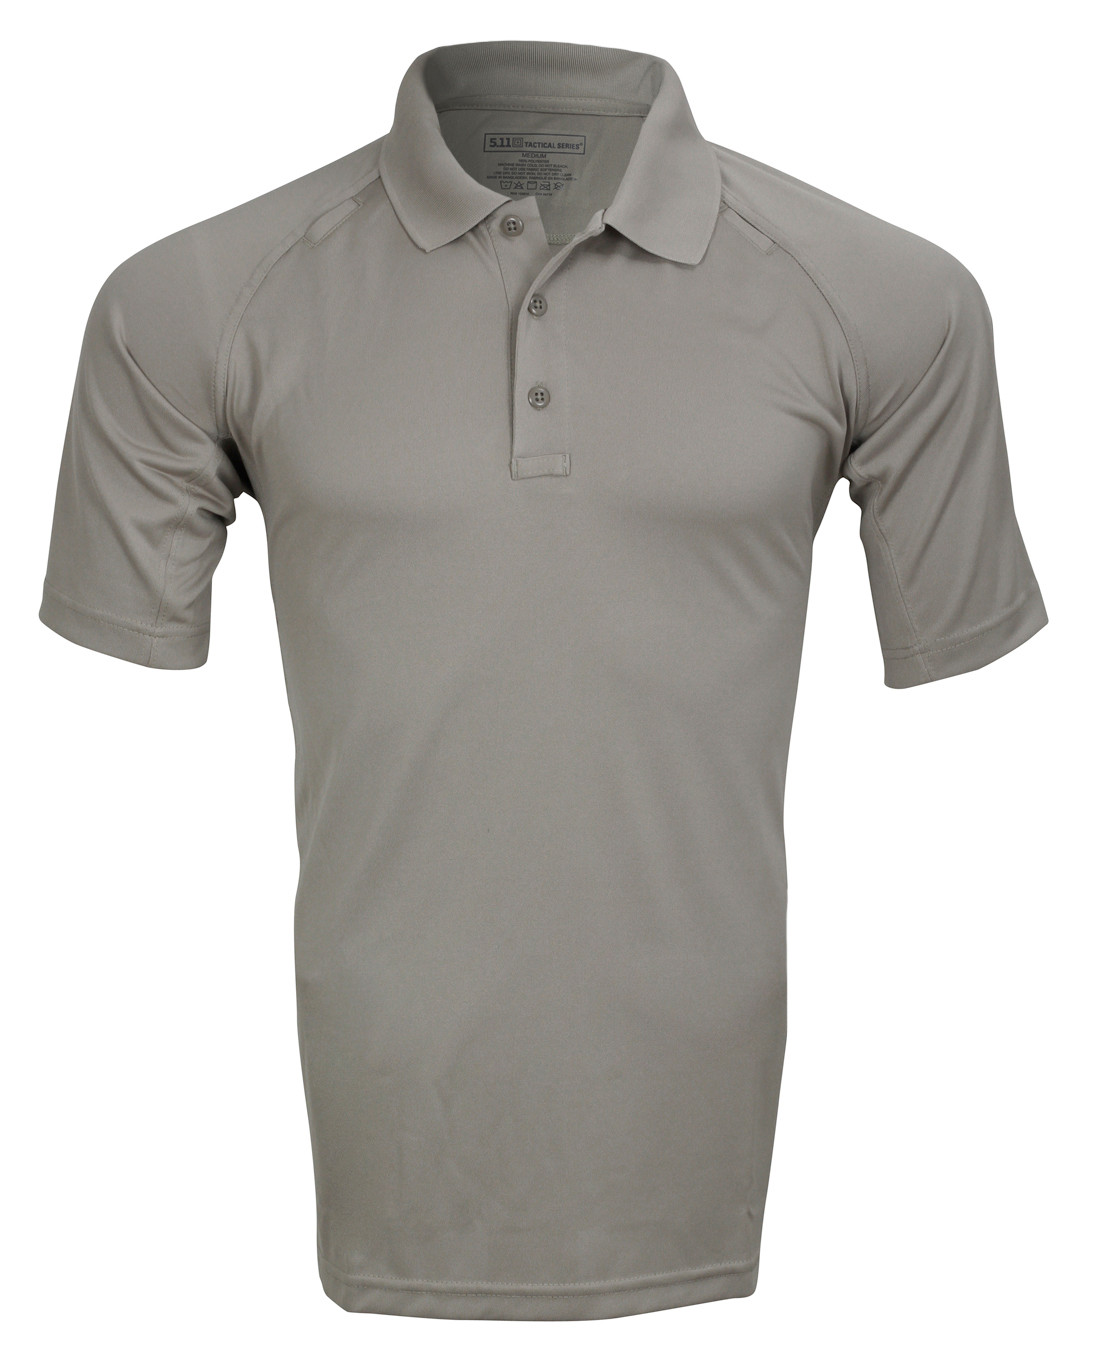 5.11 Tactical Utility Short Sleeve Polo Shirt Men's XL Silver Tan 41180 160